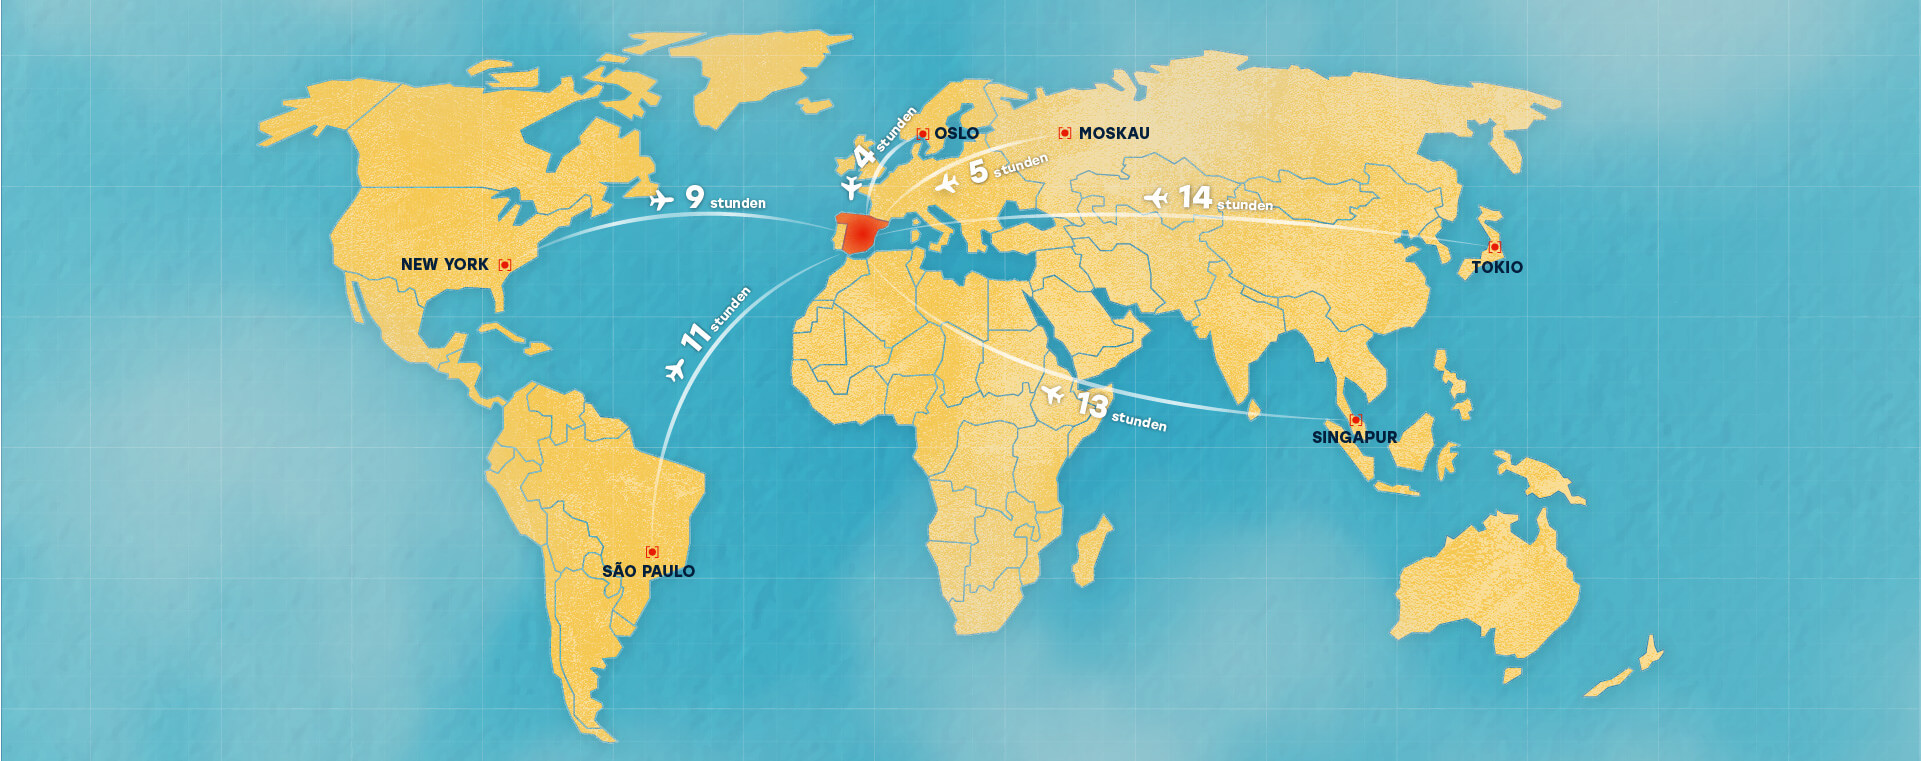 Weltkarte und Entfernungen in Flugstunden